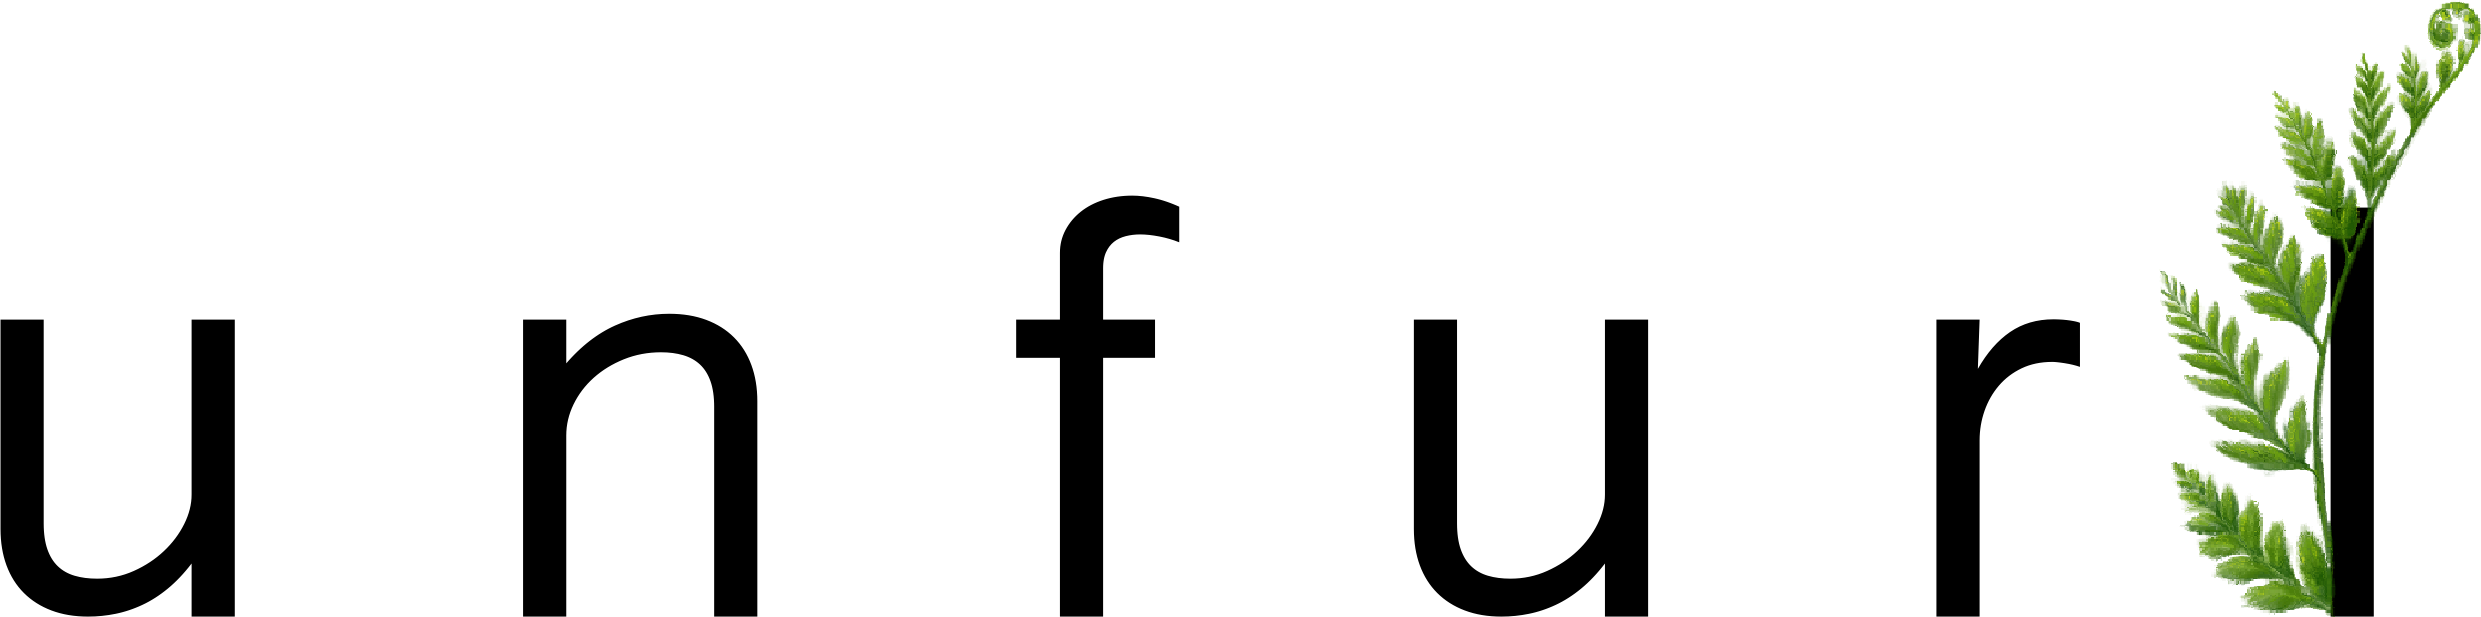 Unfurl Logo